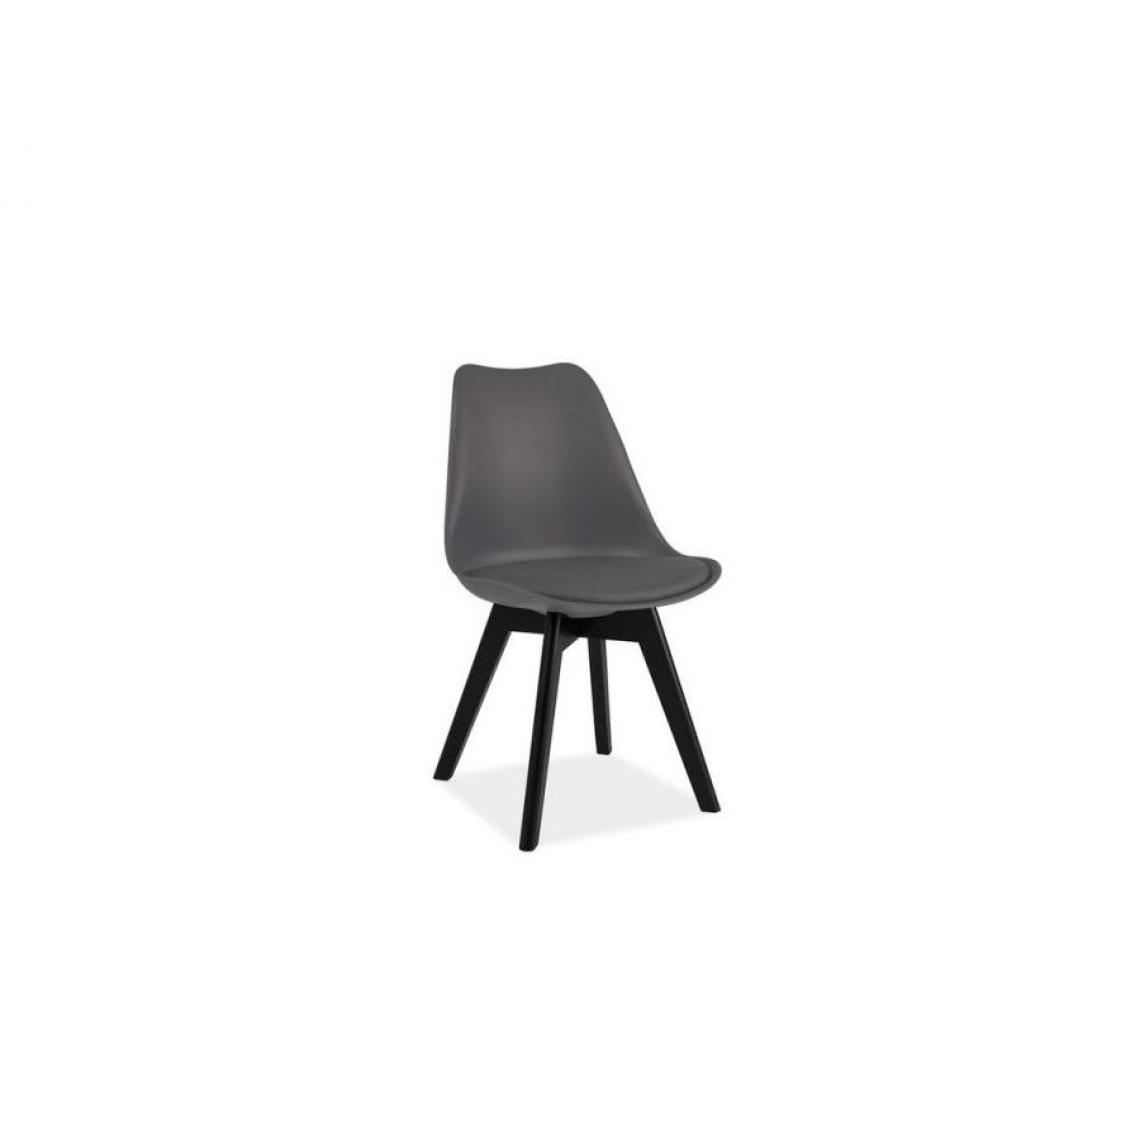 Hucoco - KRIK | Chaise style scandinave salle à manger salon bureau | 83x49x43 cm | PP + similicuir + bois | Chaise moderne - Gris - Chaises